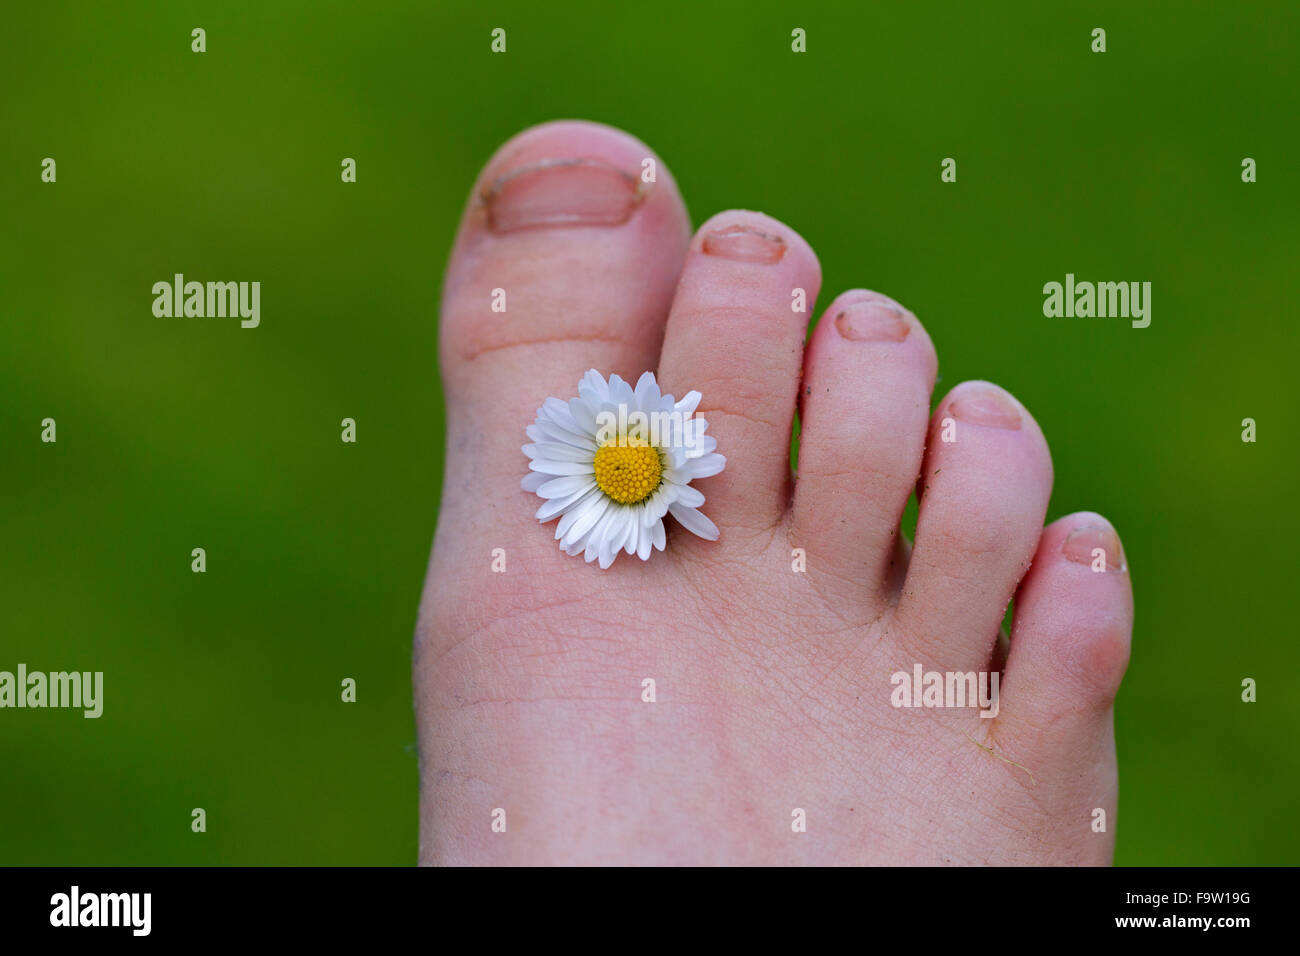 Daisy común / césped daisy (Bellis perennis) flor entre los dedos del pie del niño Foto de stock